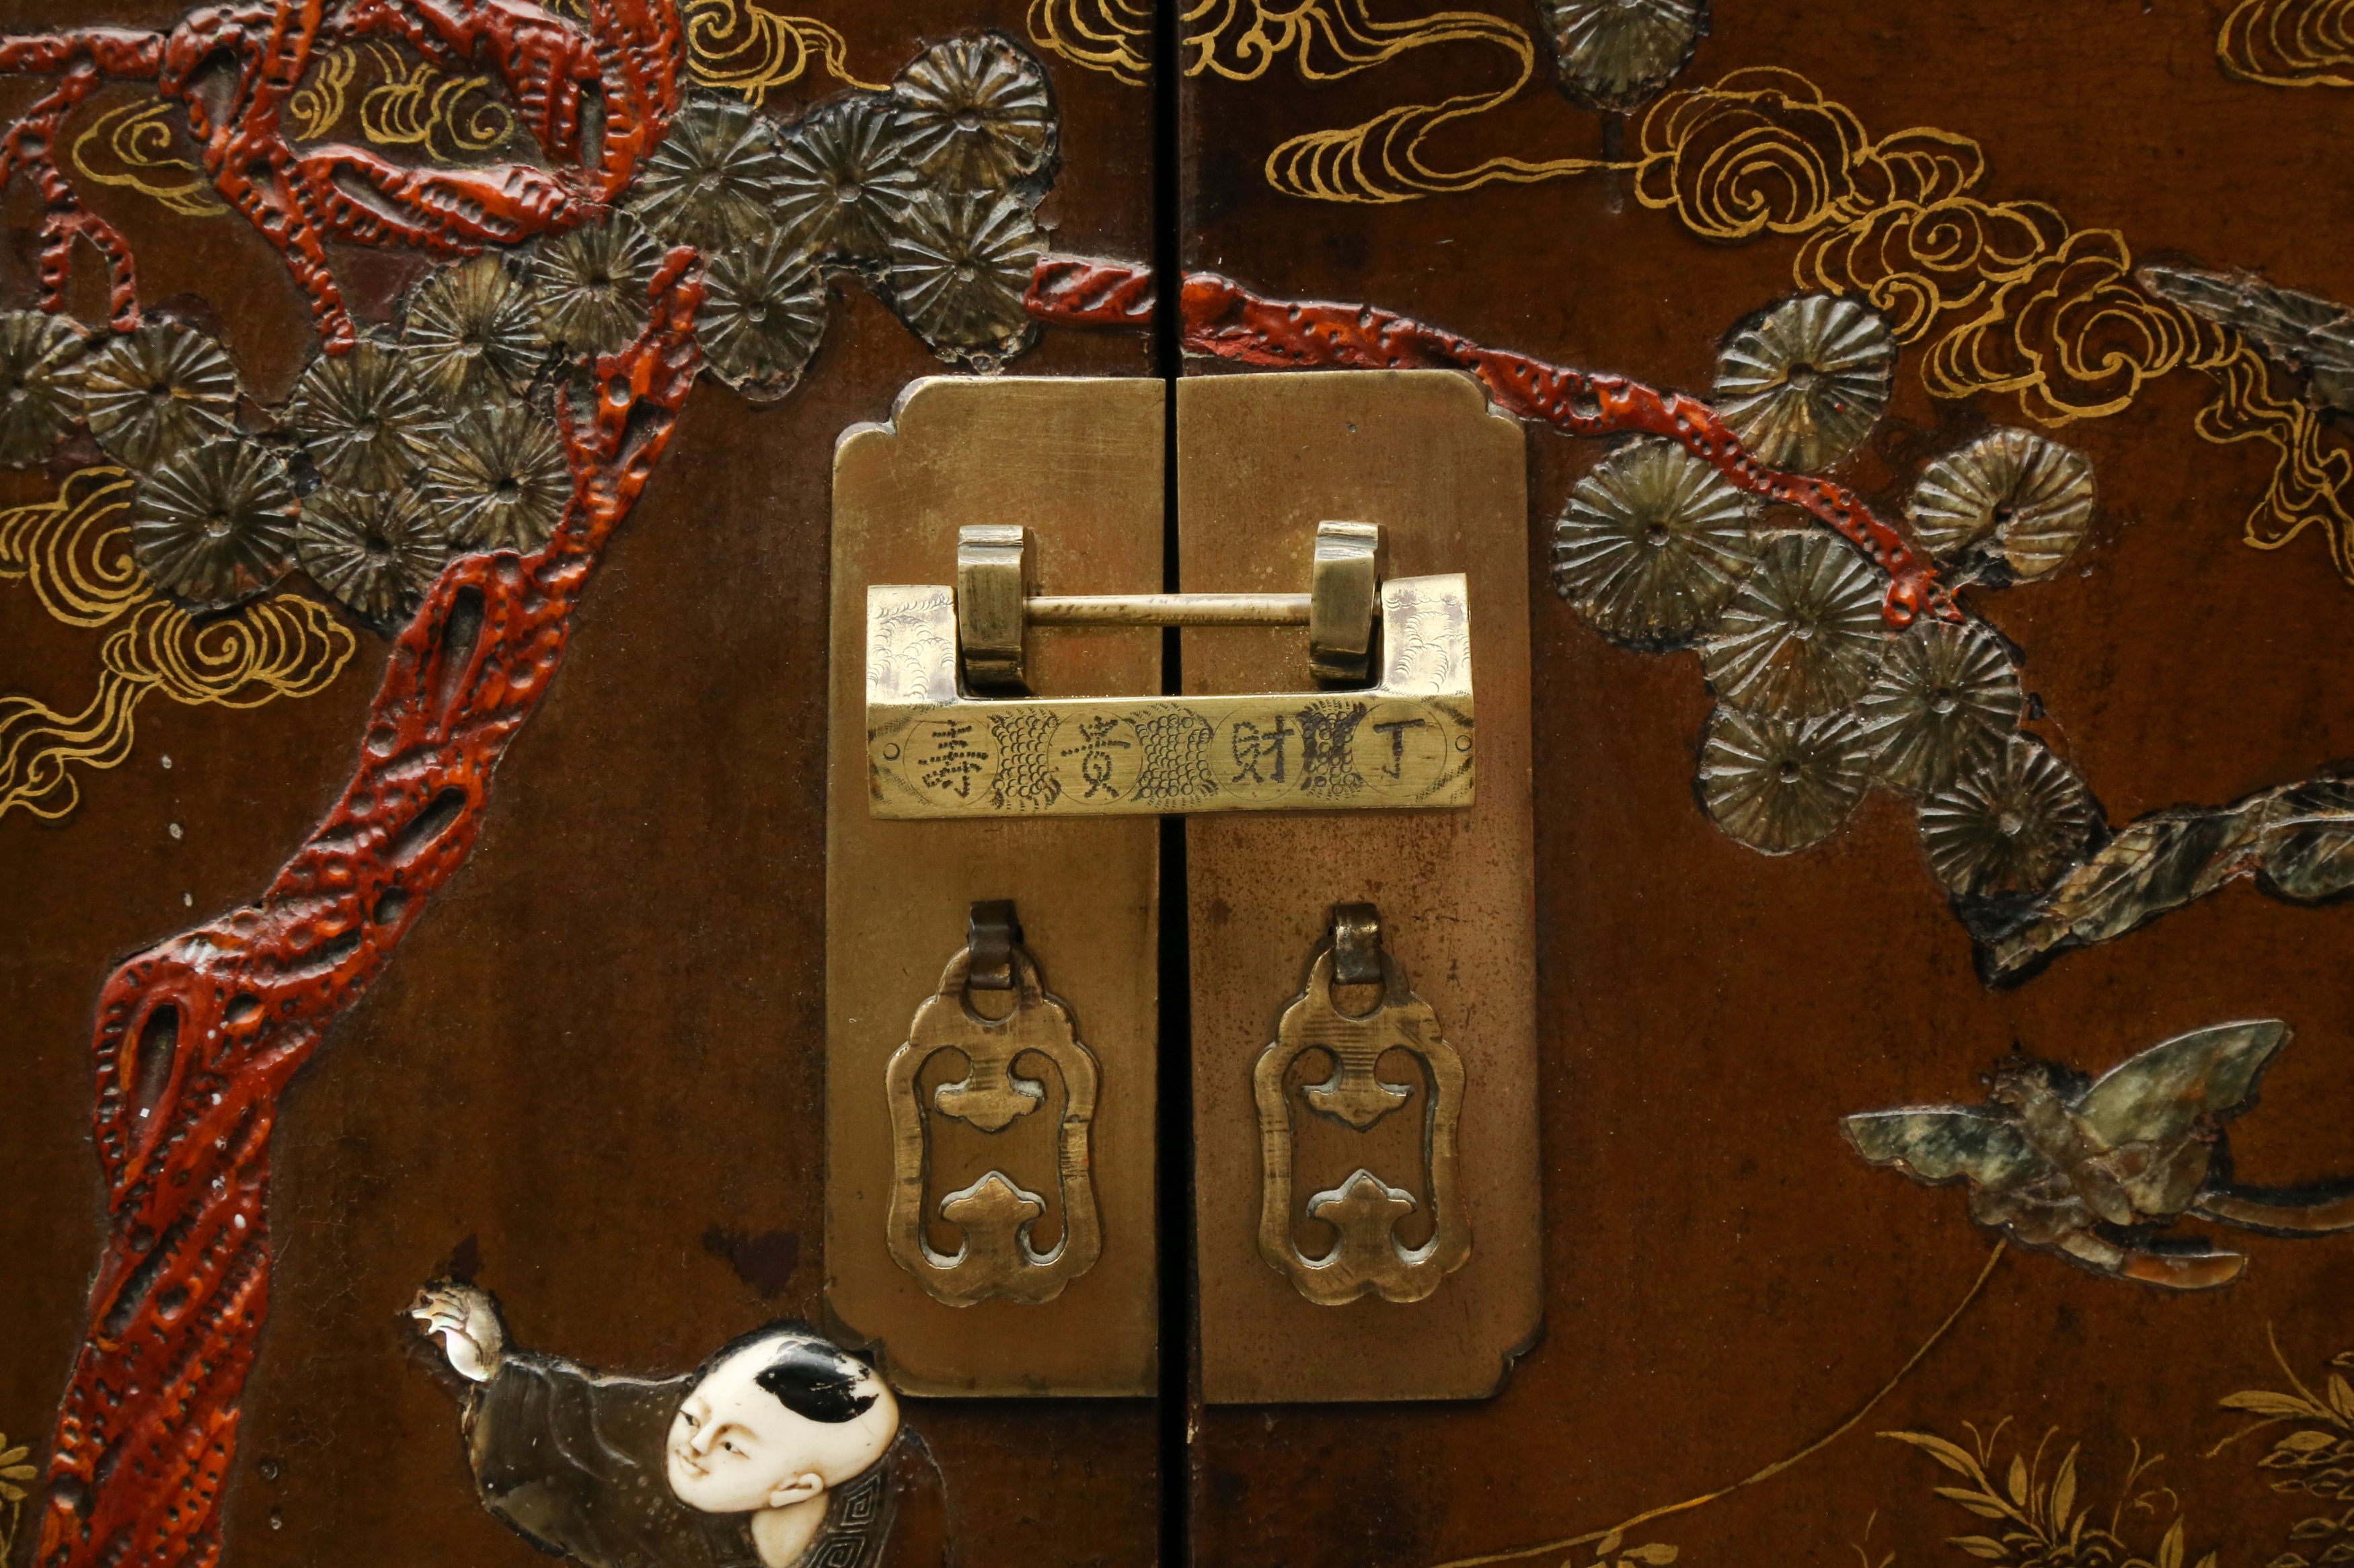 λ A PAIR OF CHINESE HARDSTONE AND IVORY-INLAID LACQUERED WOOD CABINETS 十九世紀晚期或二十世紀早期 百寶嵌嬰戲圖紋櫃兩件 - Image 5 of 64